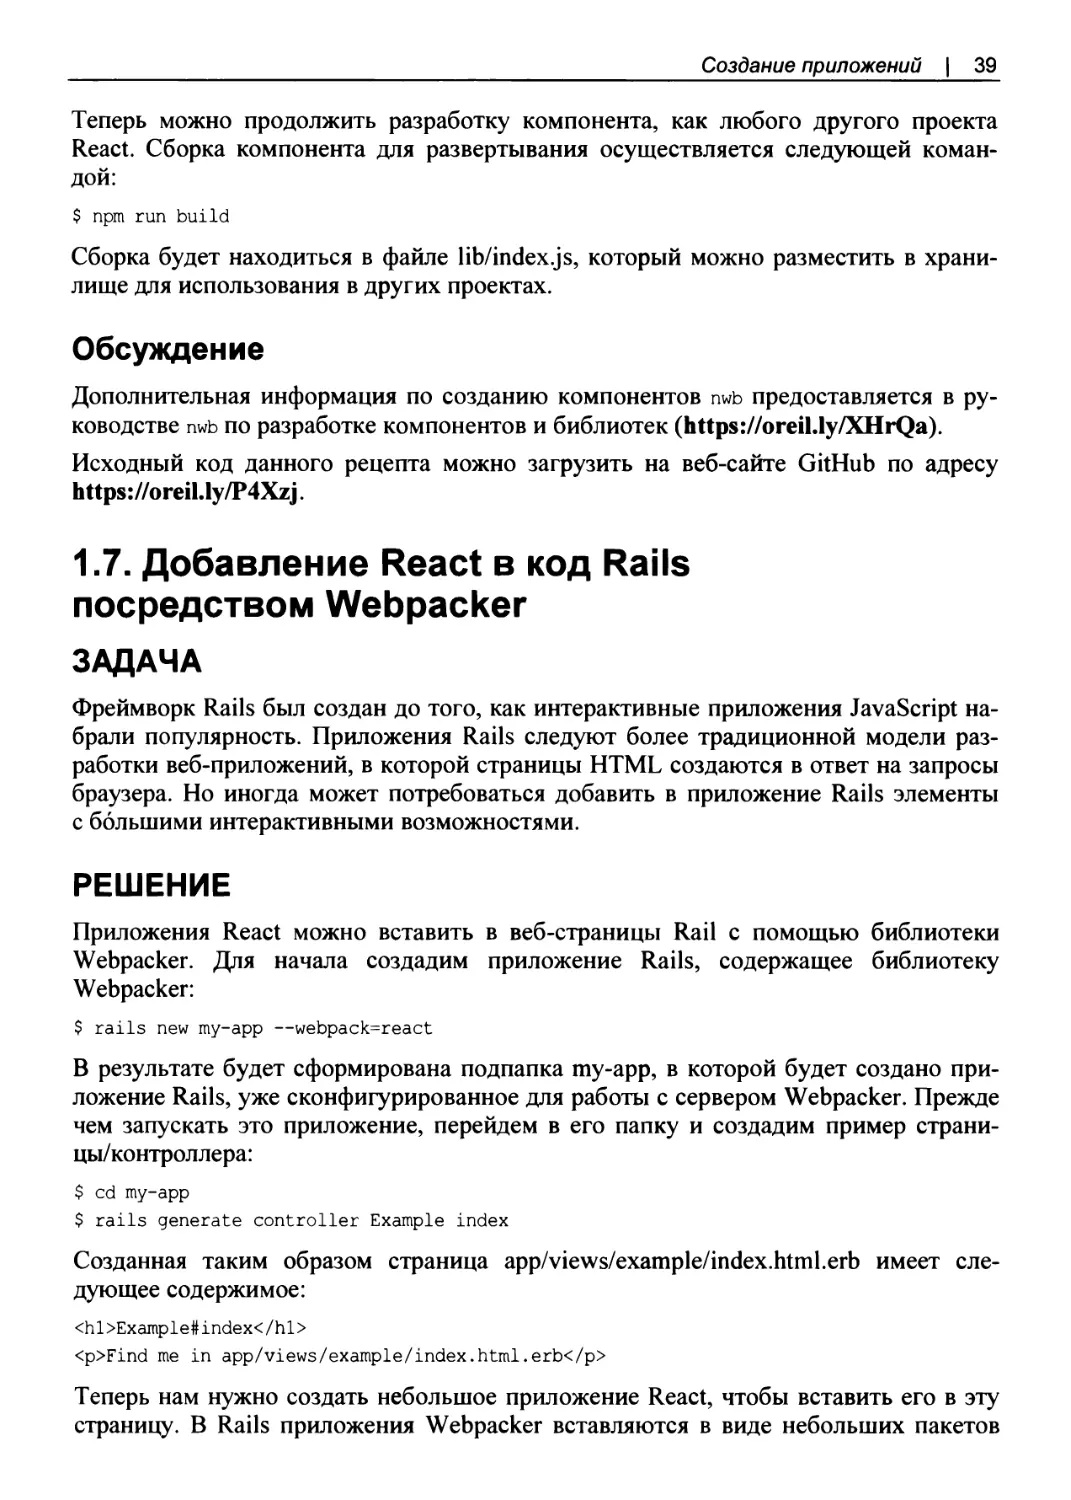 Обсуждение
1.7. Добавление React в код Rails посредством Webpacker
РЕШЕНИЕ